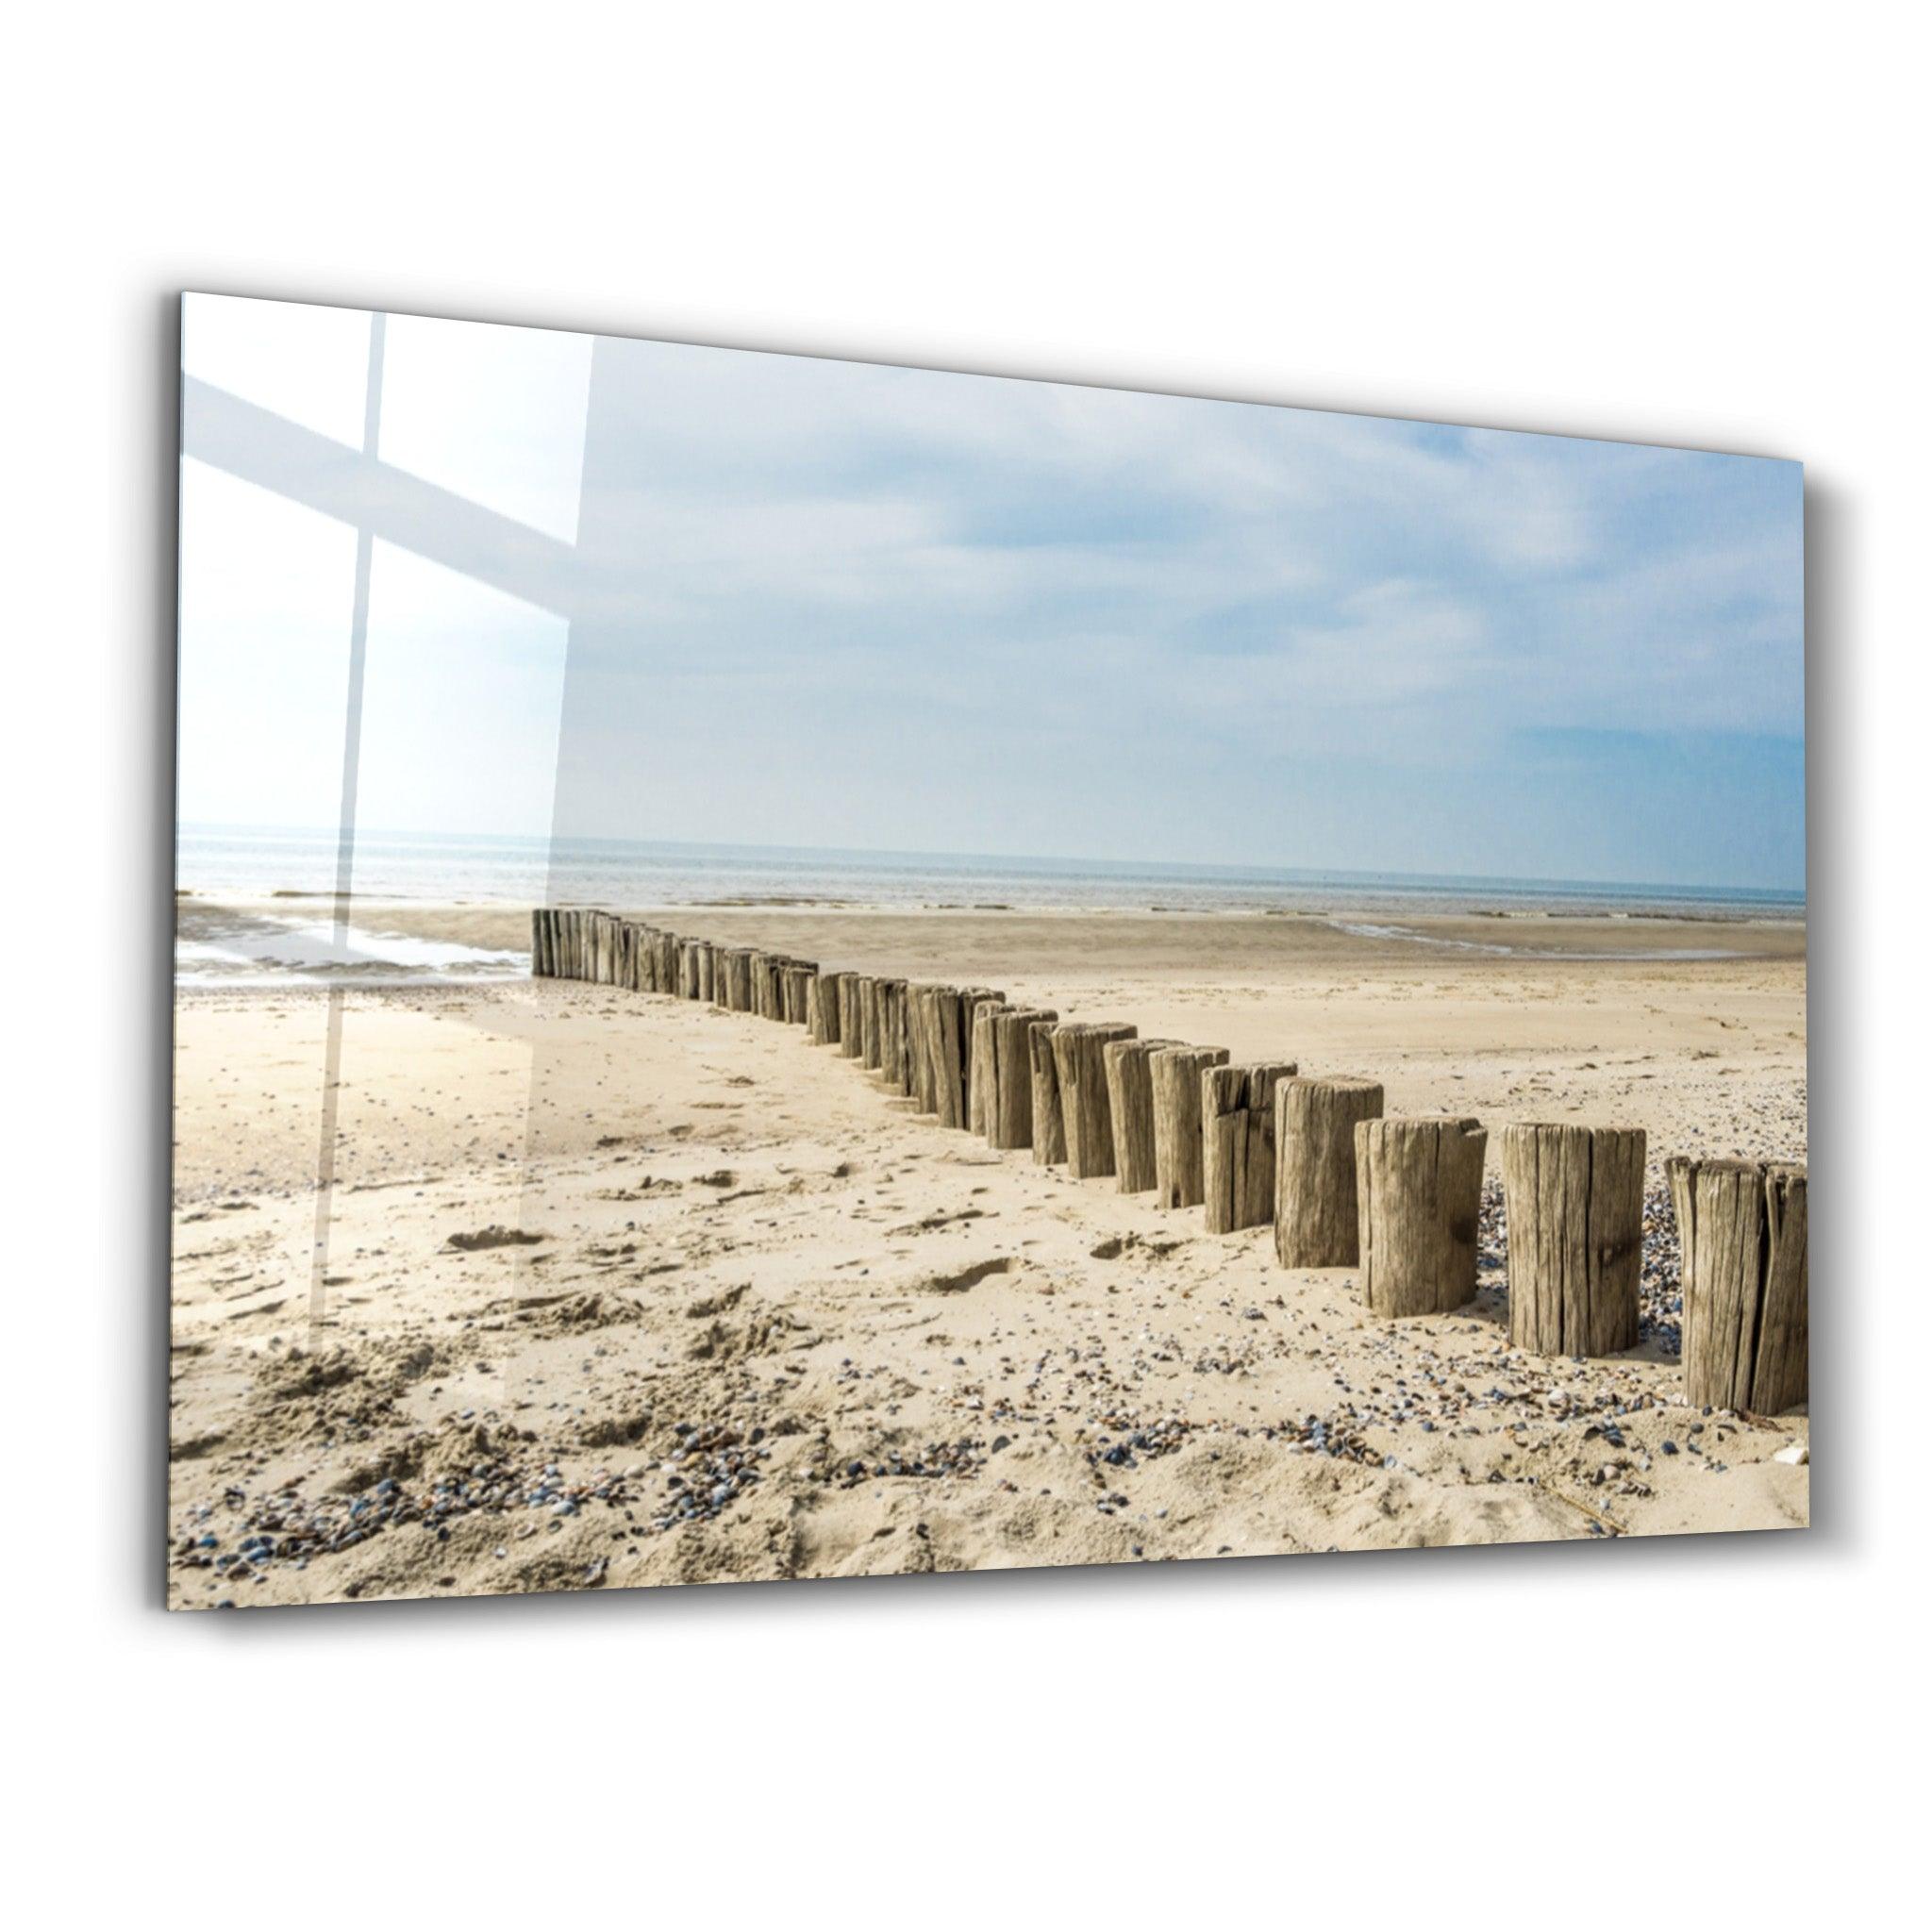 Silent Beach | Glass Wall Art - ArtDesigna Glass Printing Wall Art